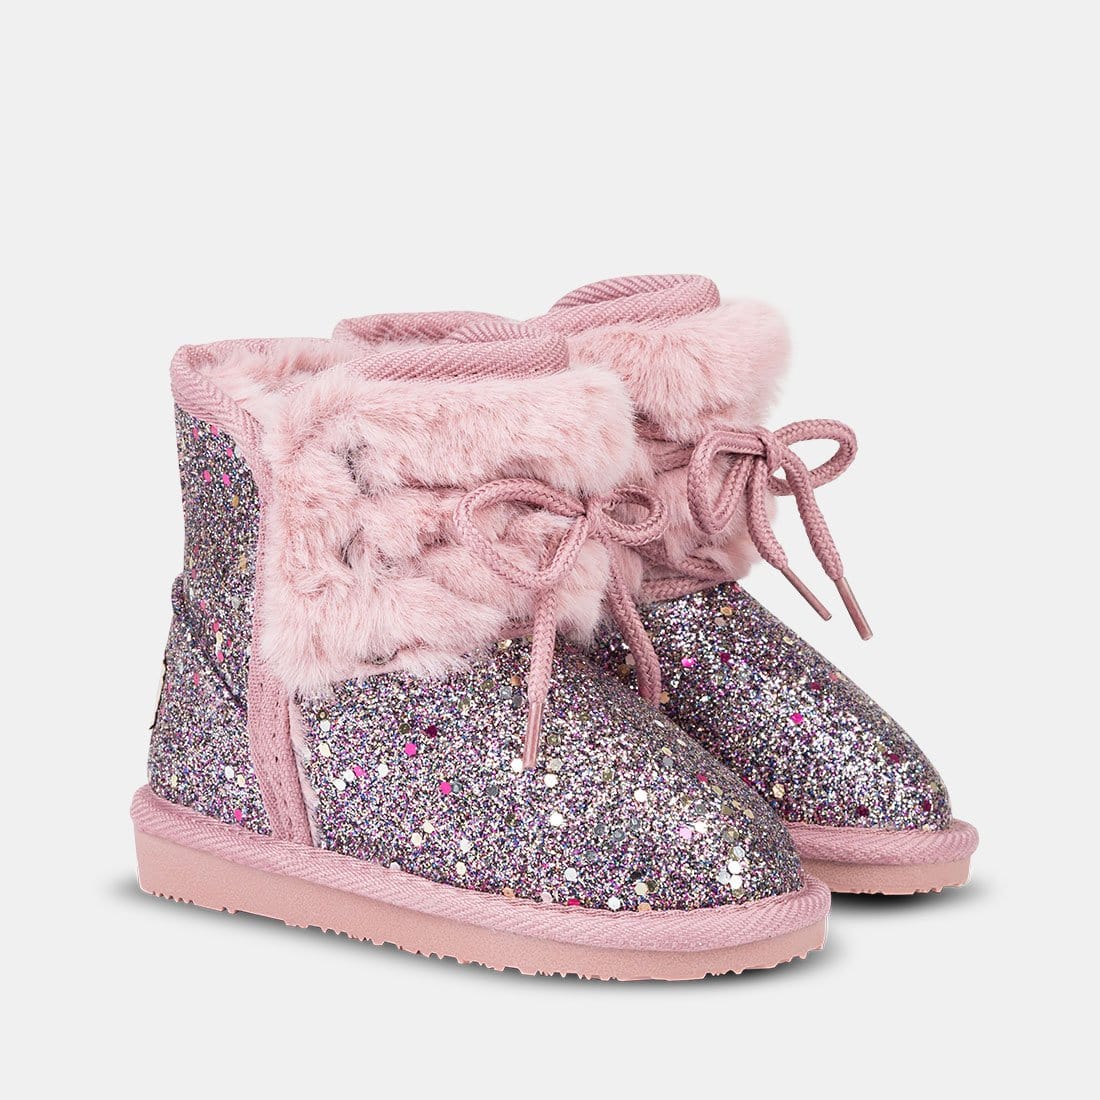 OSITO Shoes Botas Australianas de Bebé Glitter Pelo Fucsia